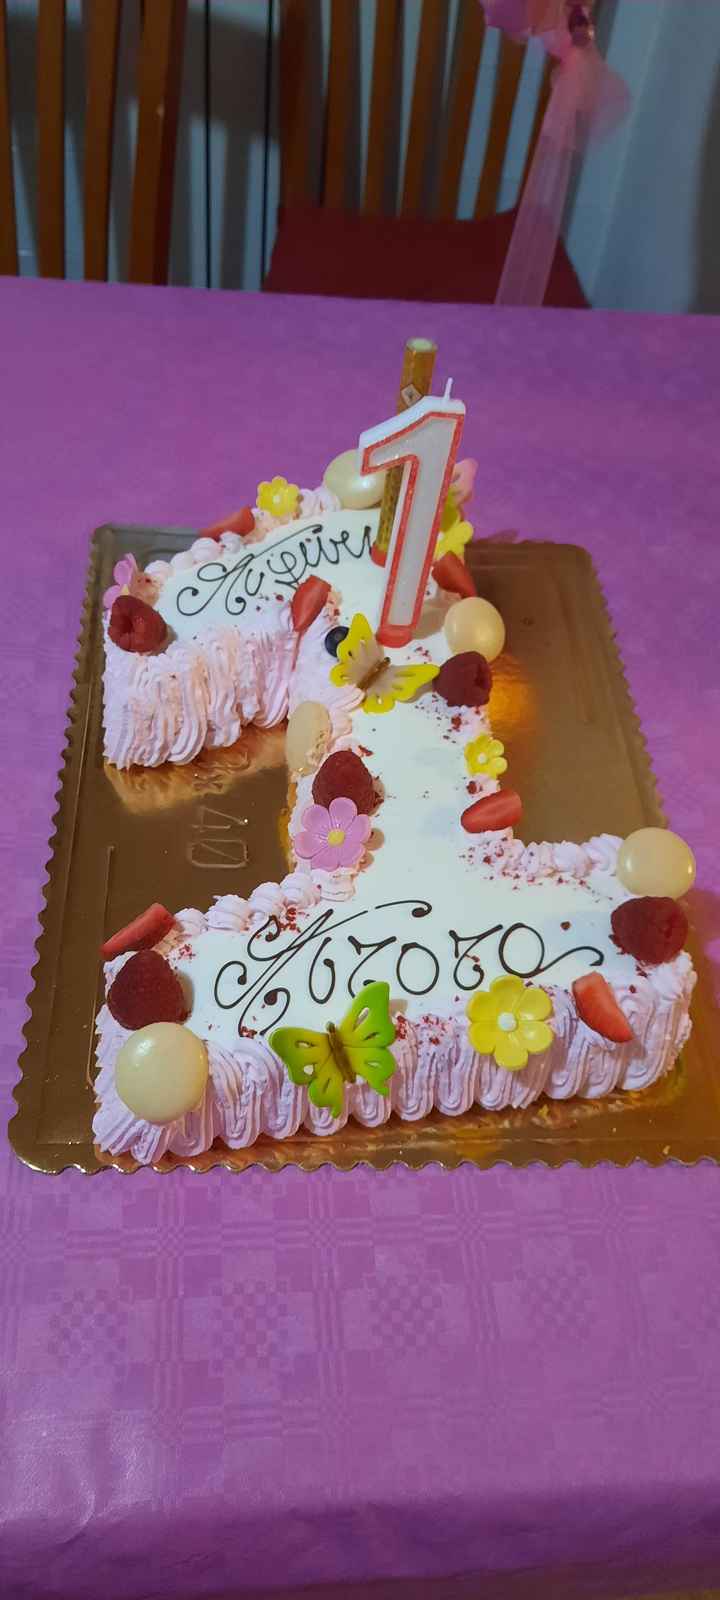 Prima torta compleanno maschietto e dettagl vari 2